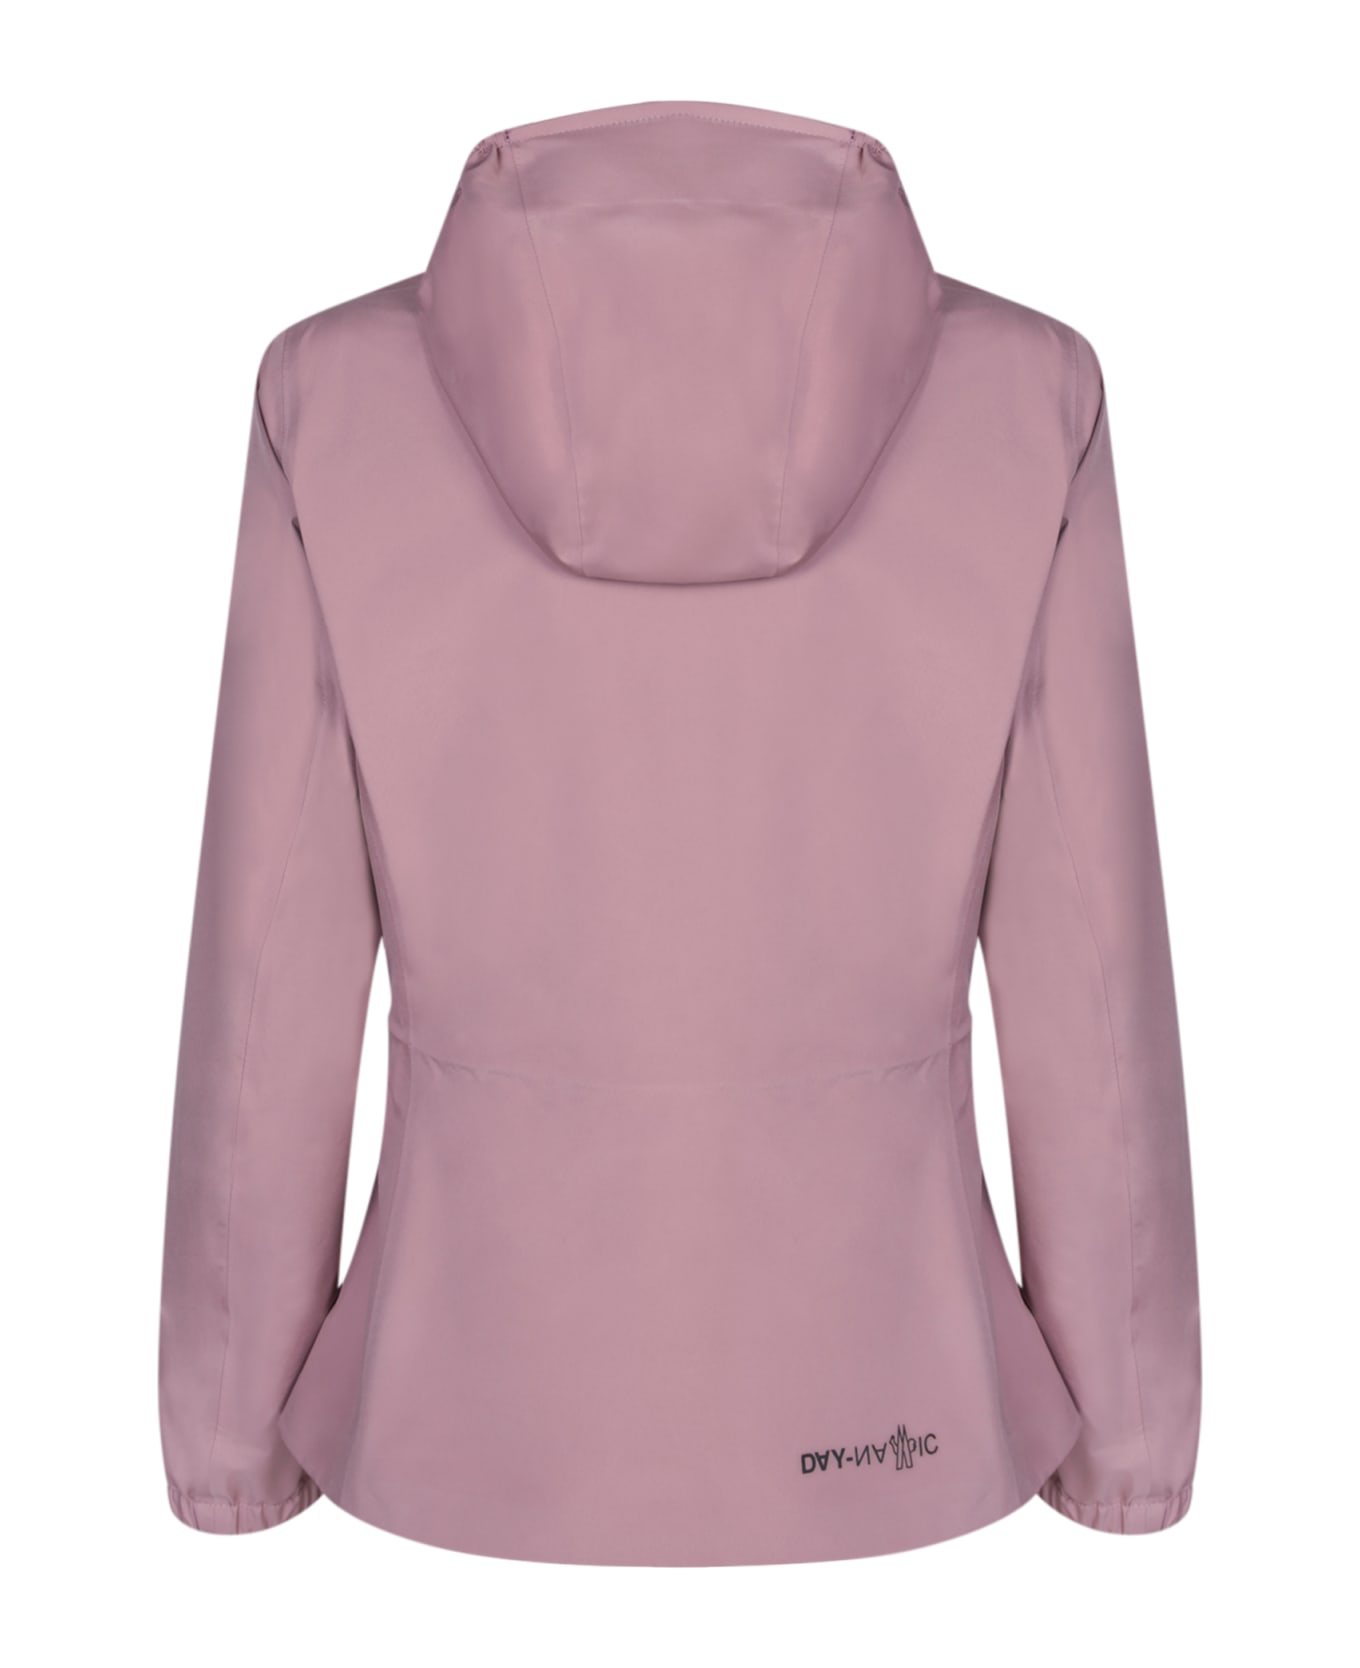 Moncler Grenoble Light Pink Valles Hooded Jacket - Pink